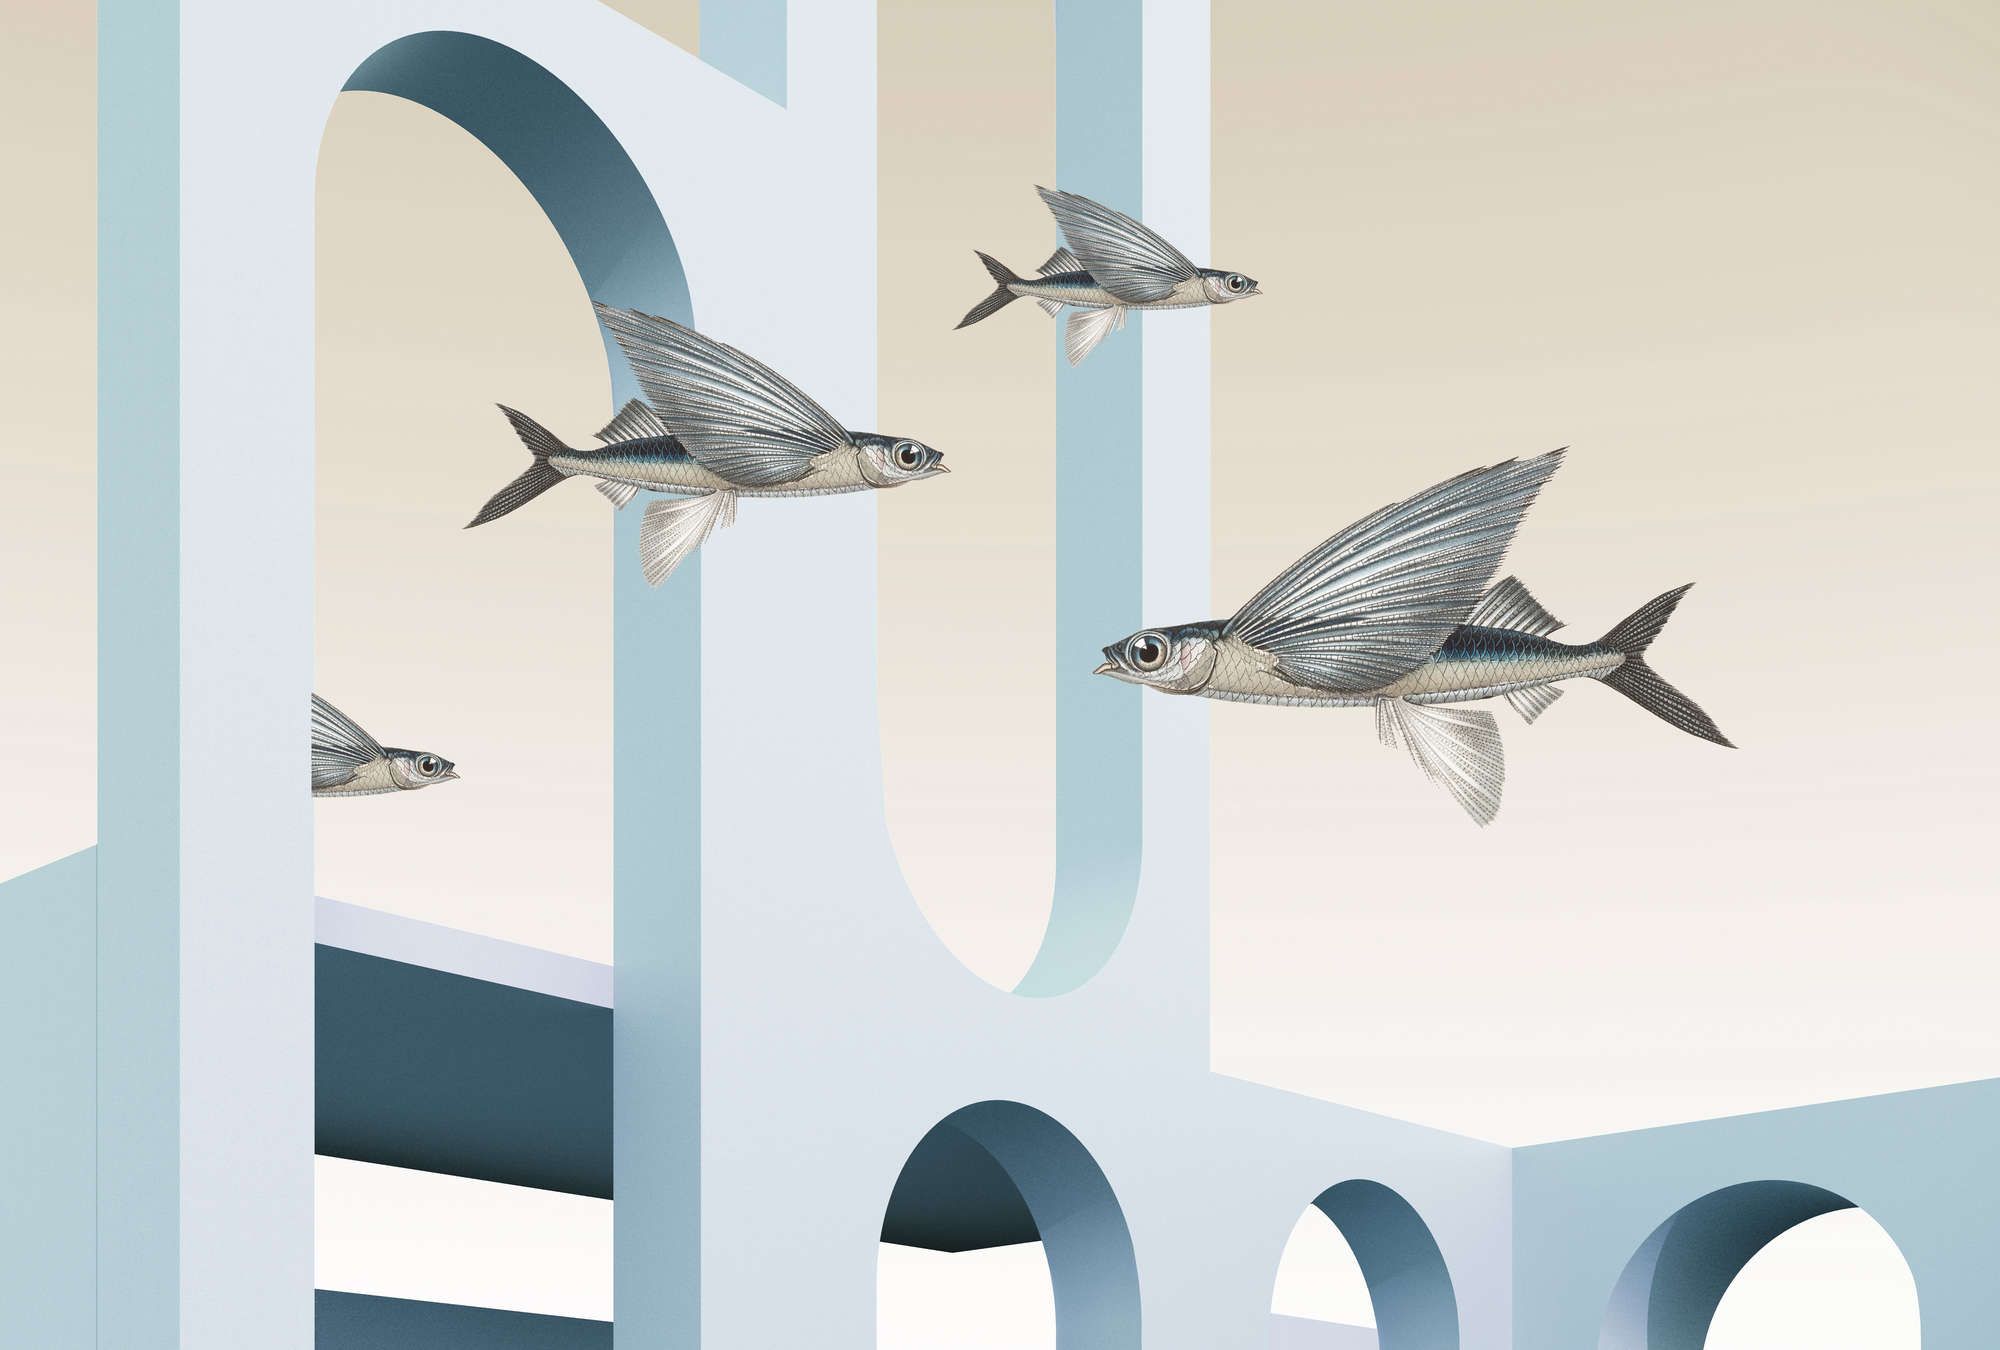             styx - papier peint en papier panoramique avec architecture abstraite 3D et poissons volants - Intissé mat et lisse
        